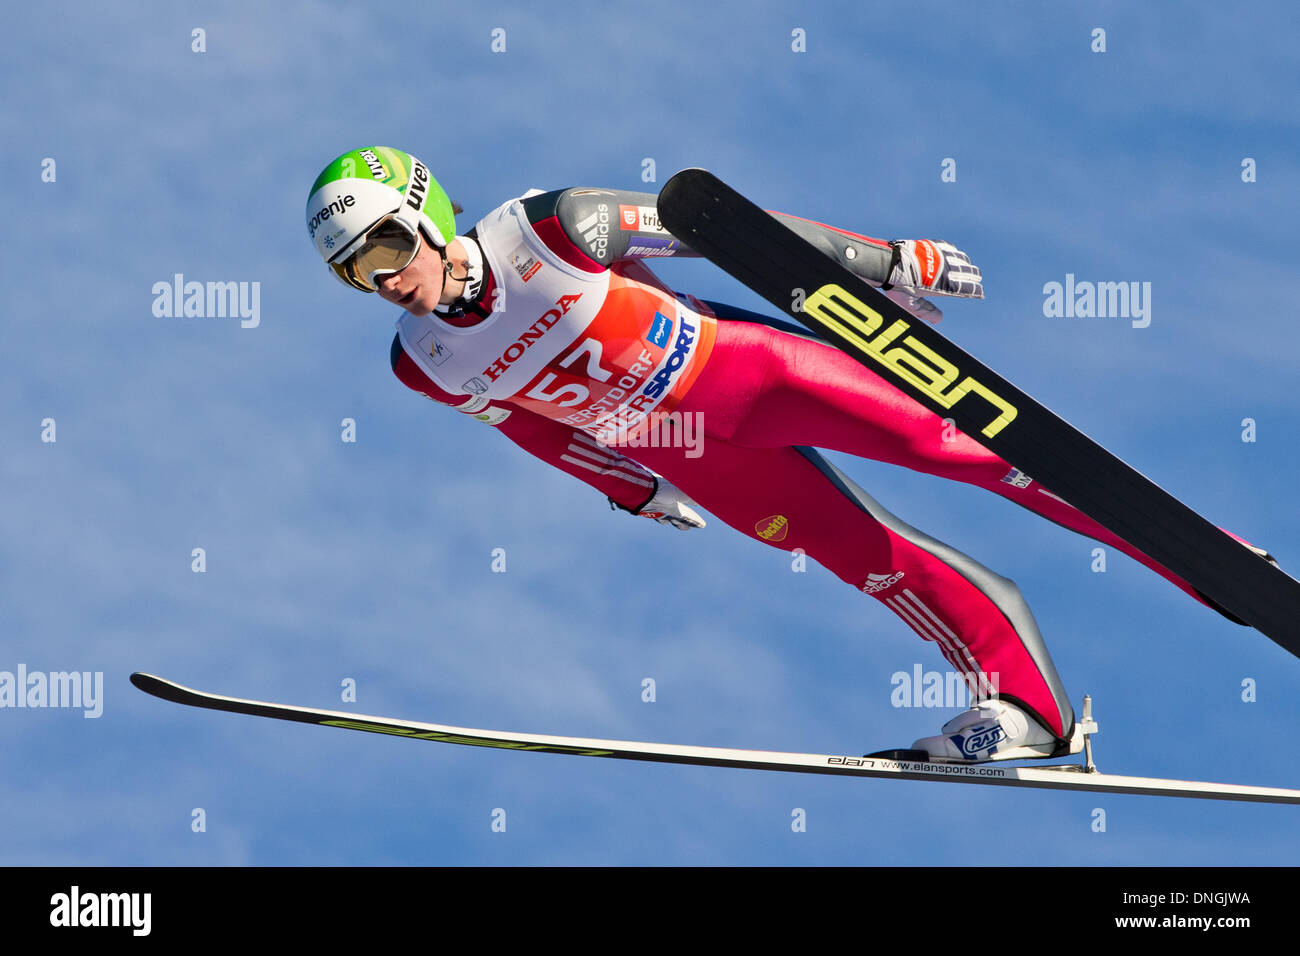 Oberstdorf, Allemagne. 28 Dec, 2013. Peter Prevc de Slovénie s'élance dans l'air pendant une session de formation pour la première étape des quatre Hills ski compétition de sauts à Oberstdorf, Allemagne, le 28 décembre 2013. Photo : Daniel Karmann/dpa/Alamy Live News Banque D'Images